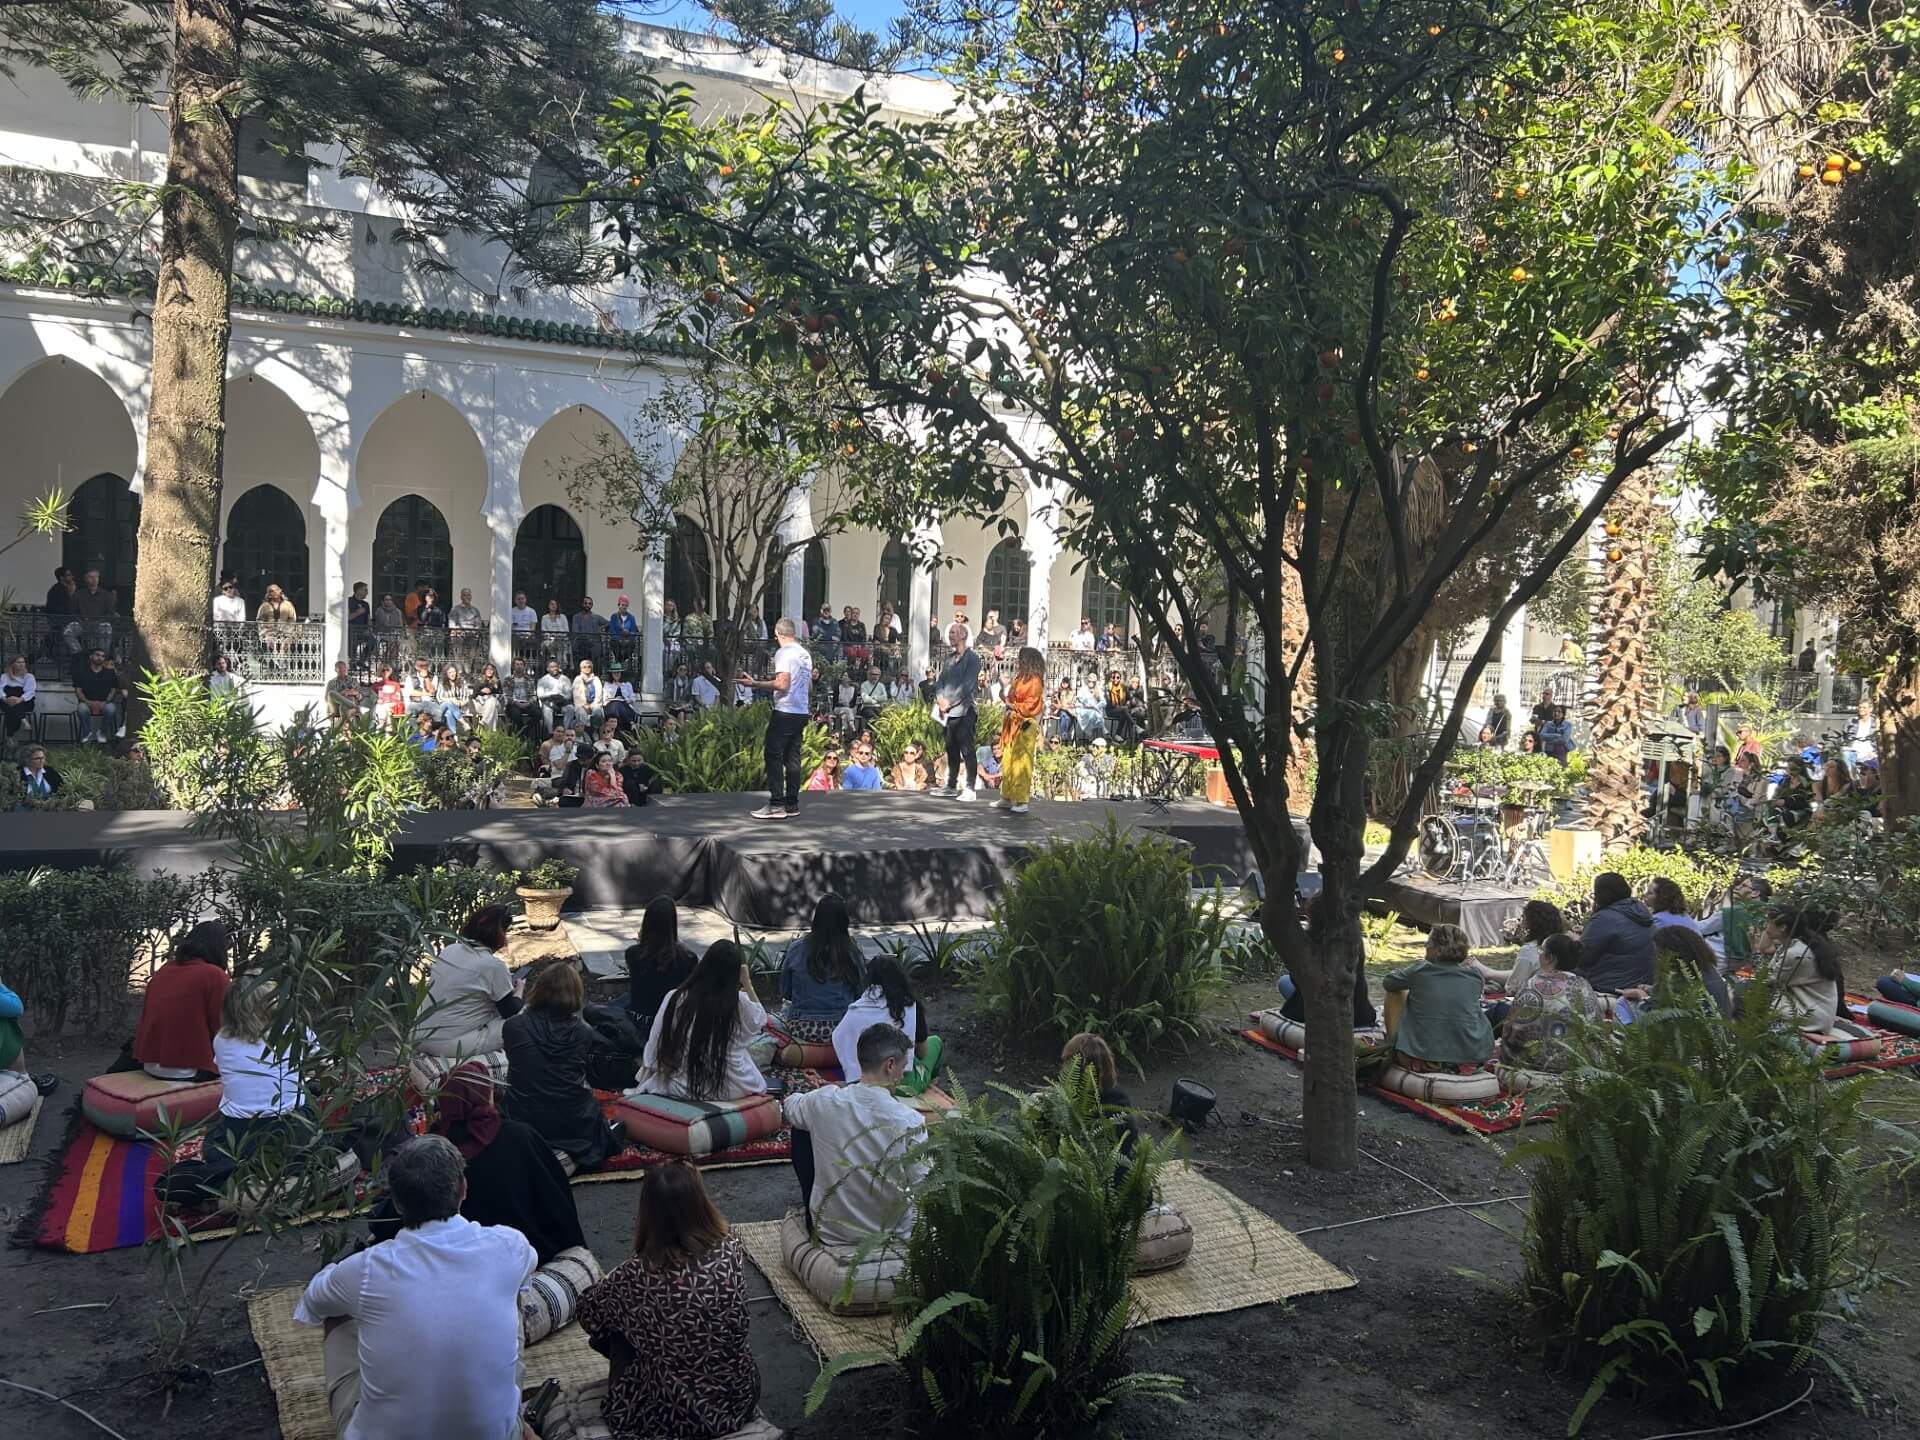 Un groupe d'une trentaine de personnes est assis sur des coussins de style marocain dans une cour en plein air de Tanger. Elles écoutent des orateurs sur une scène centrale. De beaux arbres poussent dans la cour.